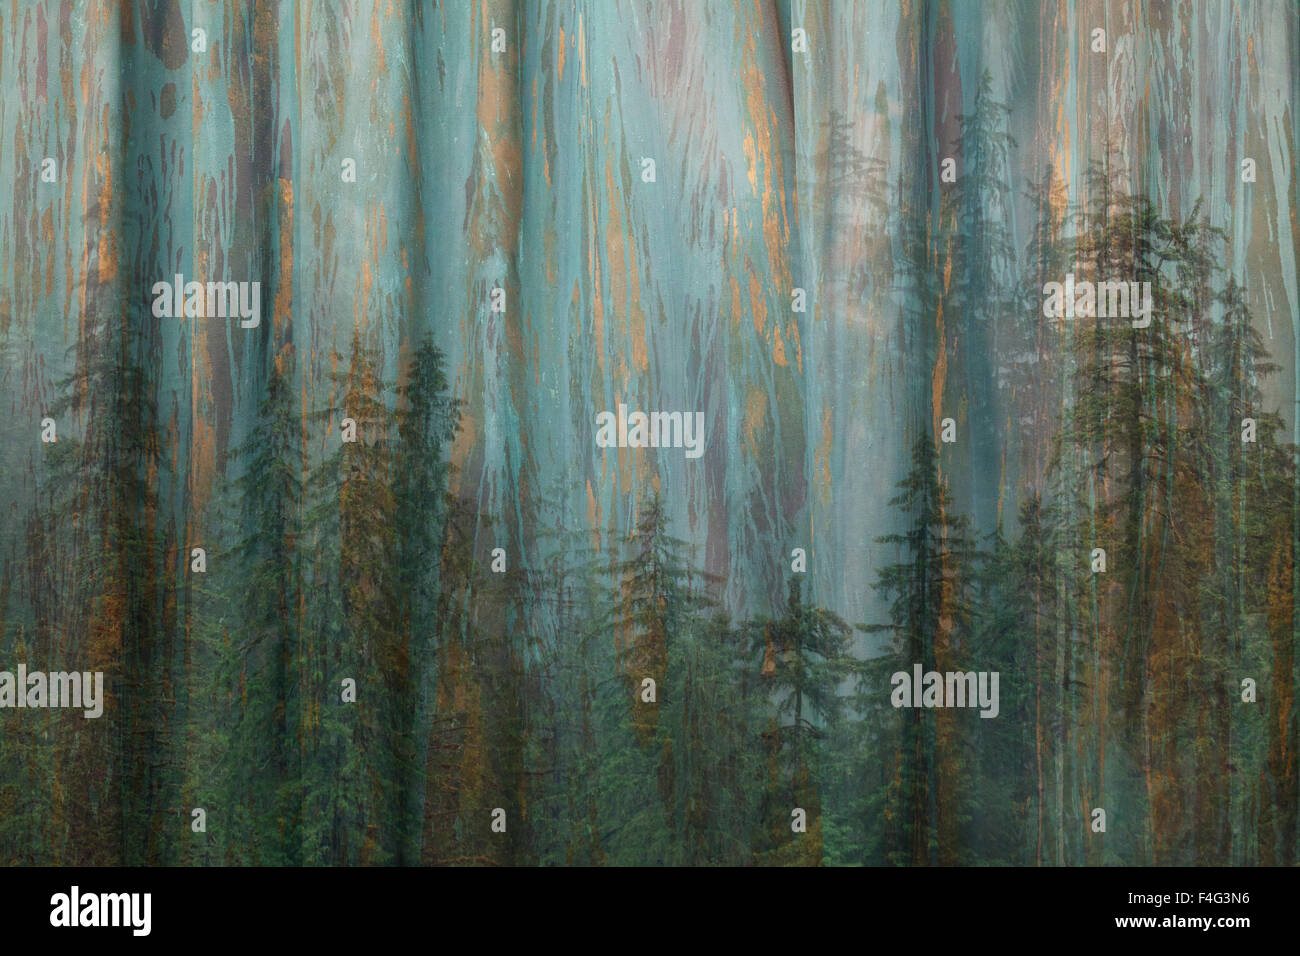 Stati Uniti d'America, Alaska, Misty fiordi monumento nazionale. Collage abstract di alberi e bosco. Credito come: Don Paulson Jaynes / Galleria / DanitaDelimont.com Foto Stock